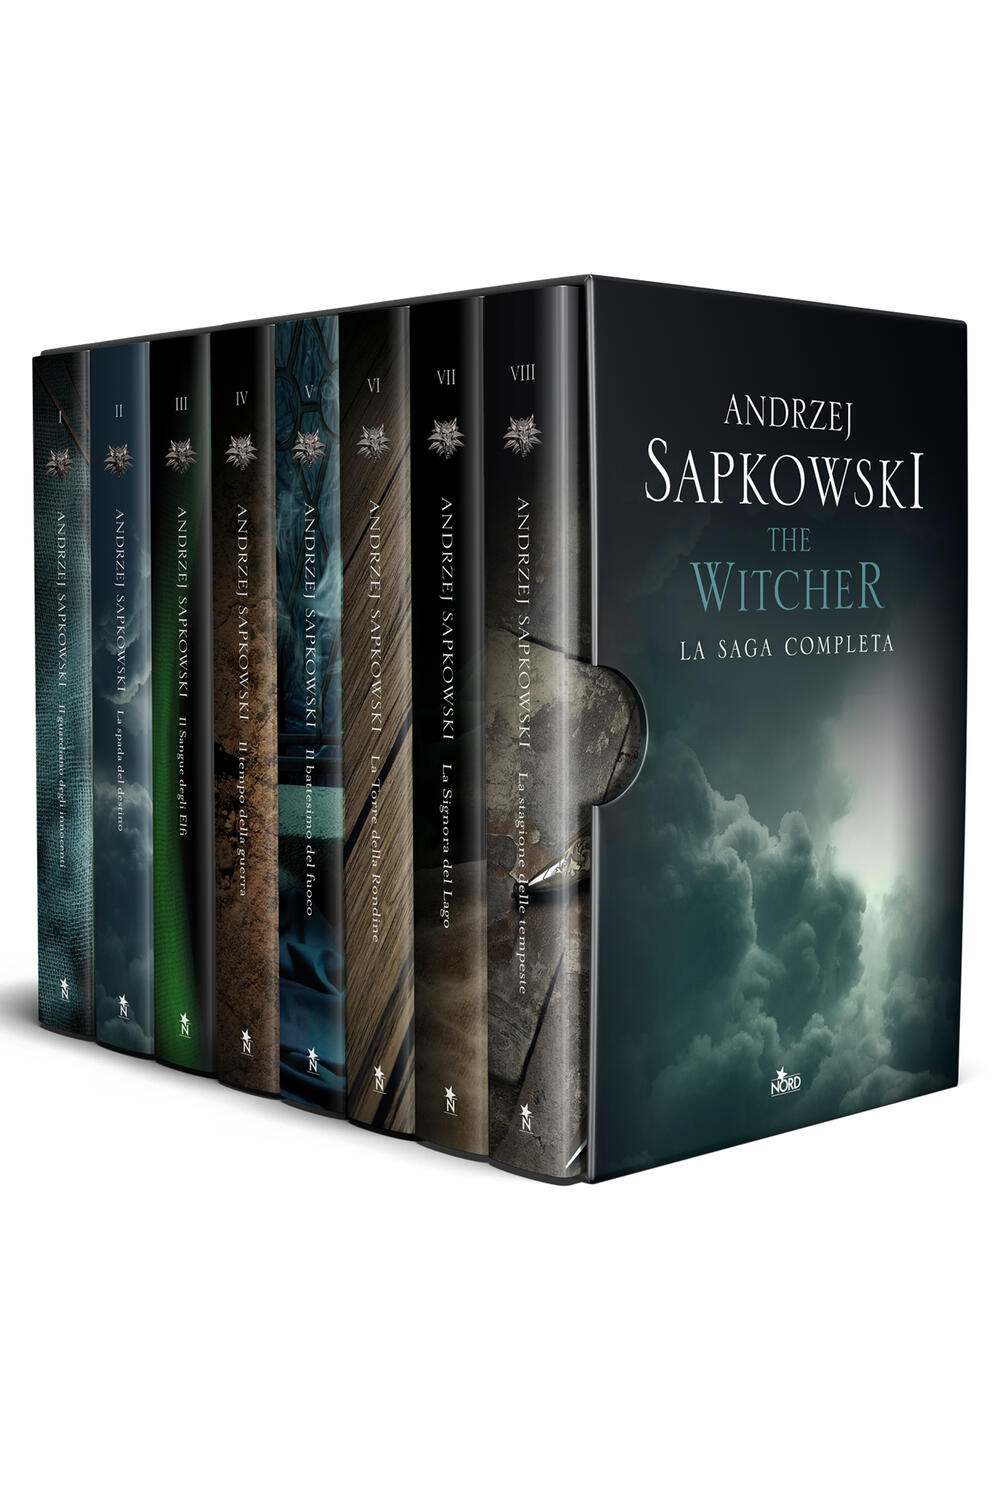 The Witcher: dalla Russia arriva una rilegatura epica dei sette libri